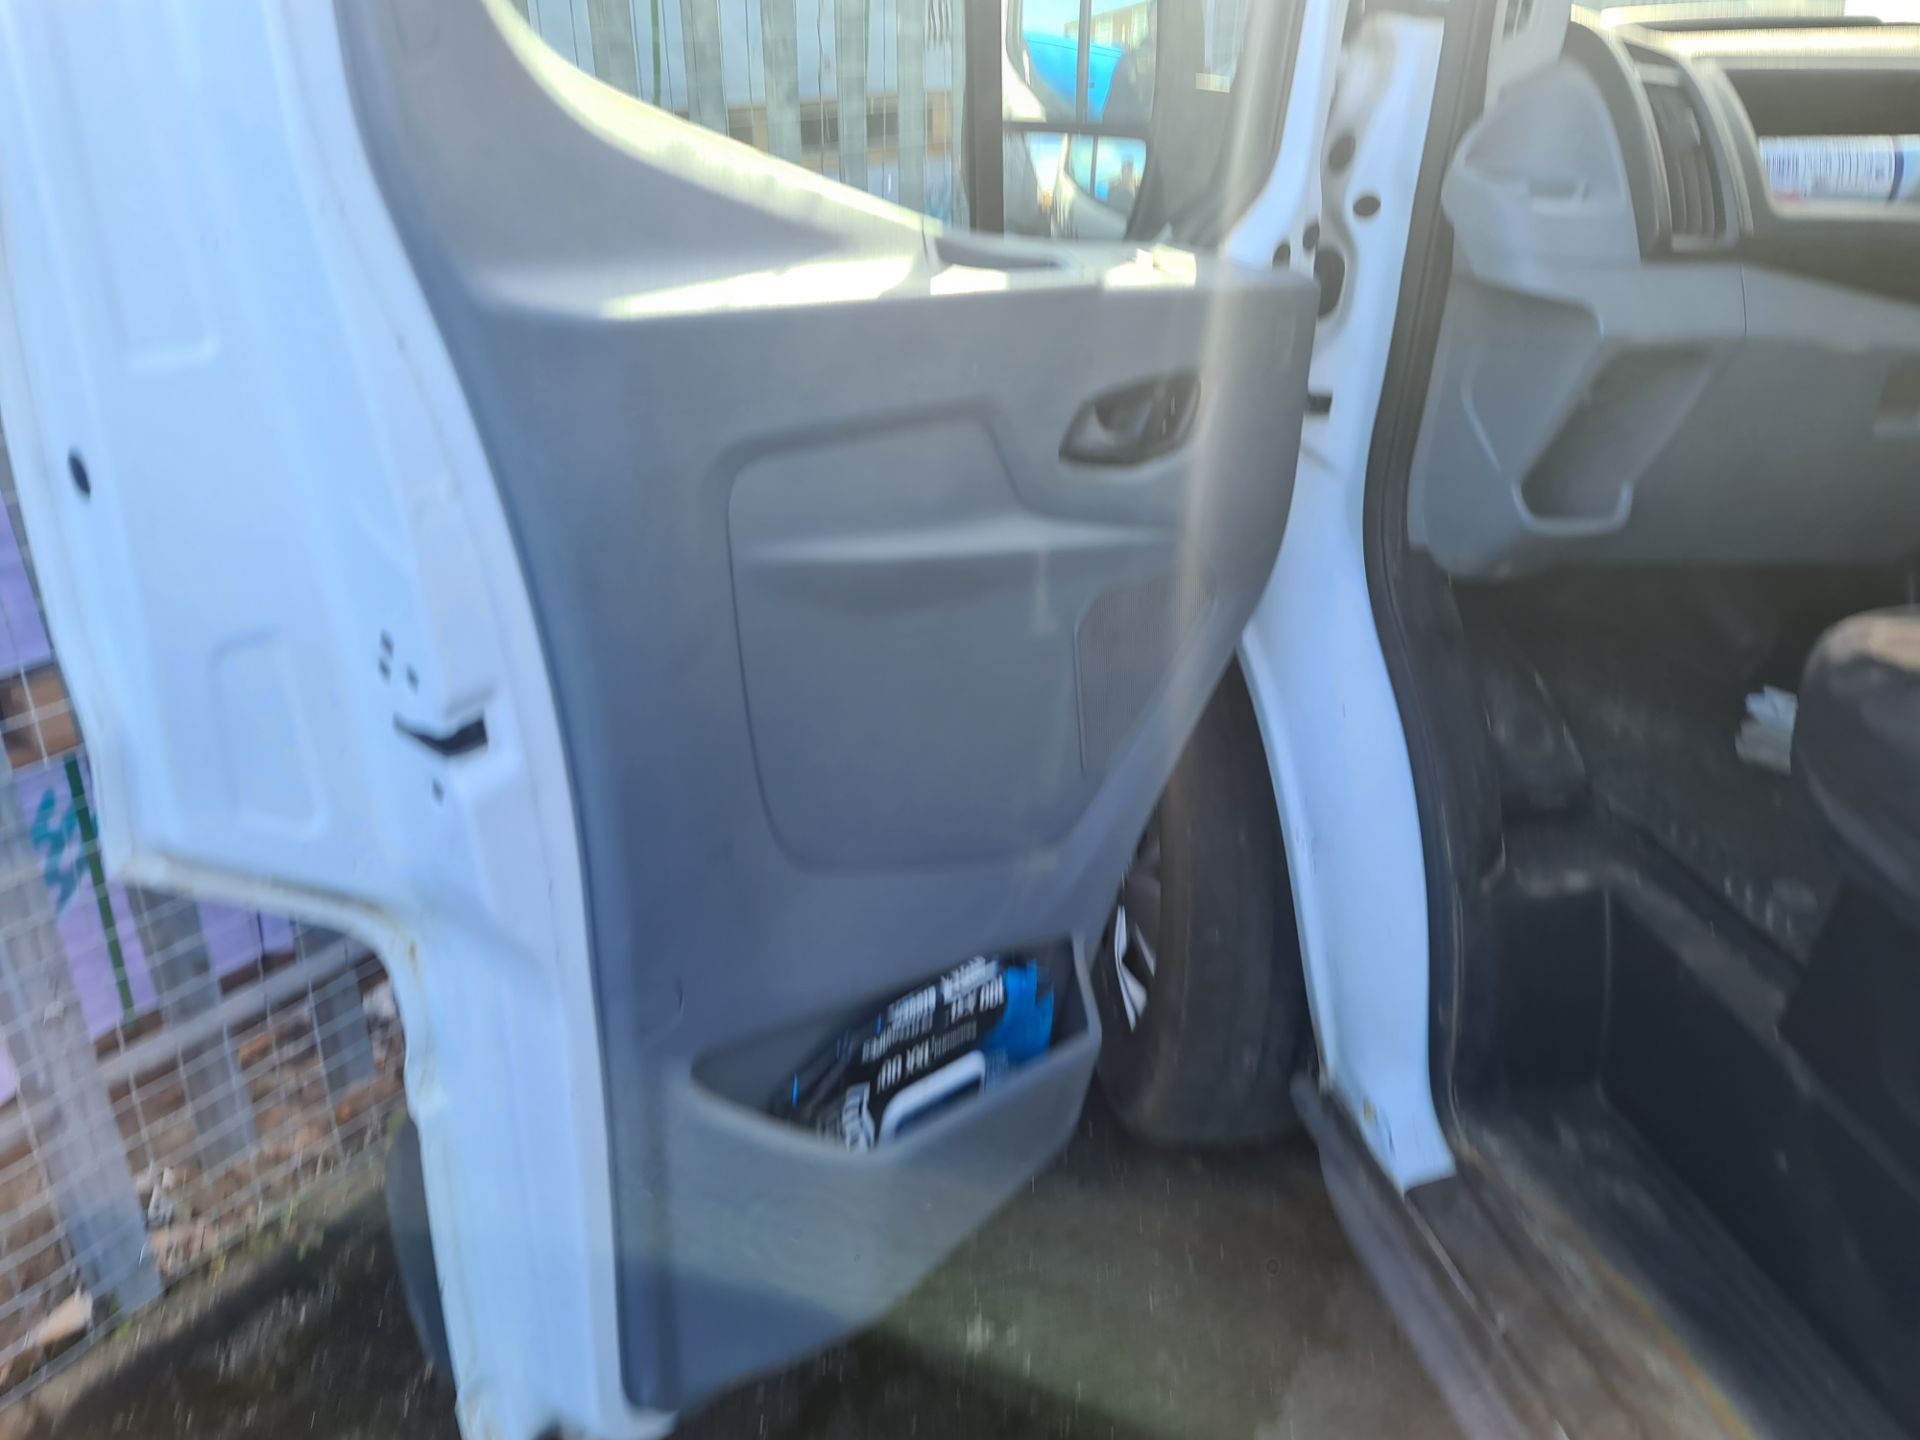 2018 Ford Transit 350 L4 H3 panel van - Image 11 of 61